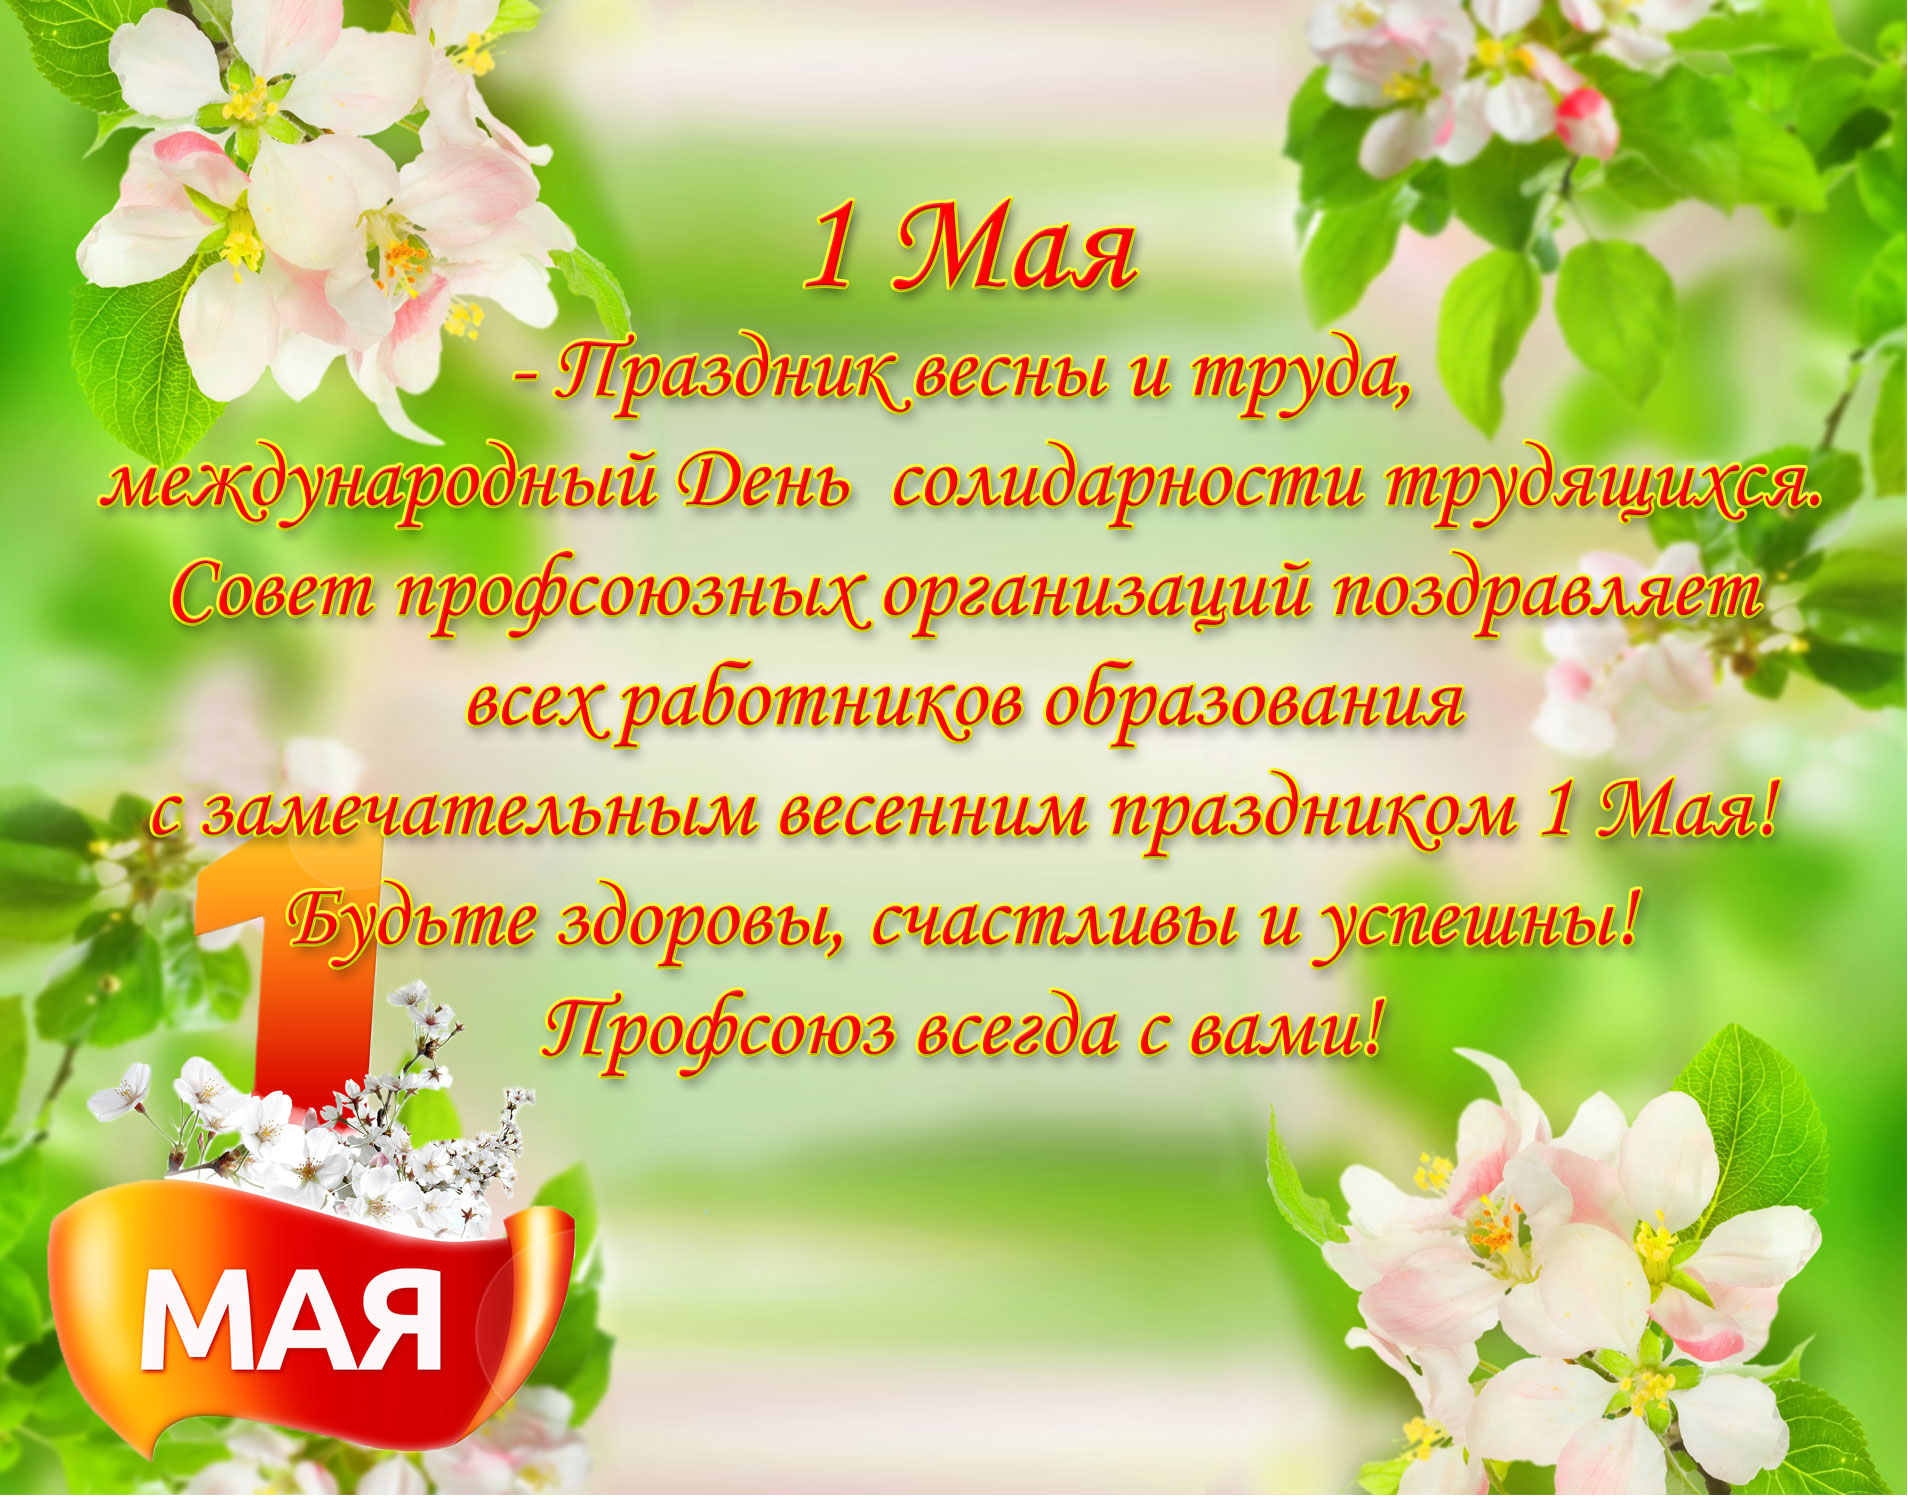 Праздник 1 мая день весны. Поздравление с 1 мая. 1 Мая праздник весны и труда. 1 Мая праздник. С праздником весны 1 мая.